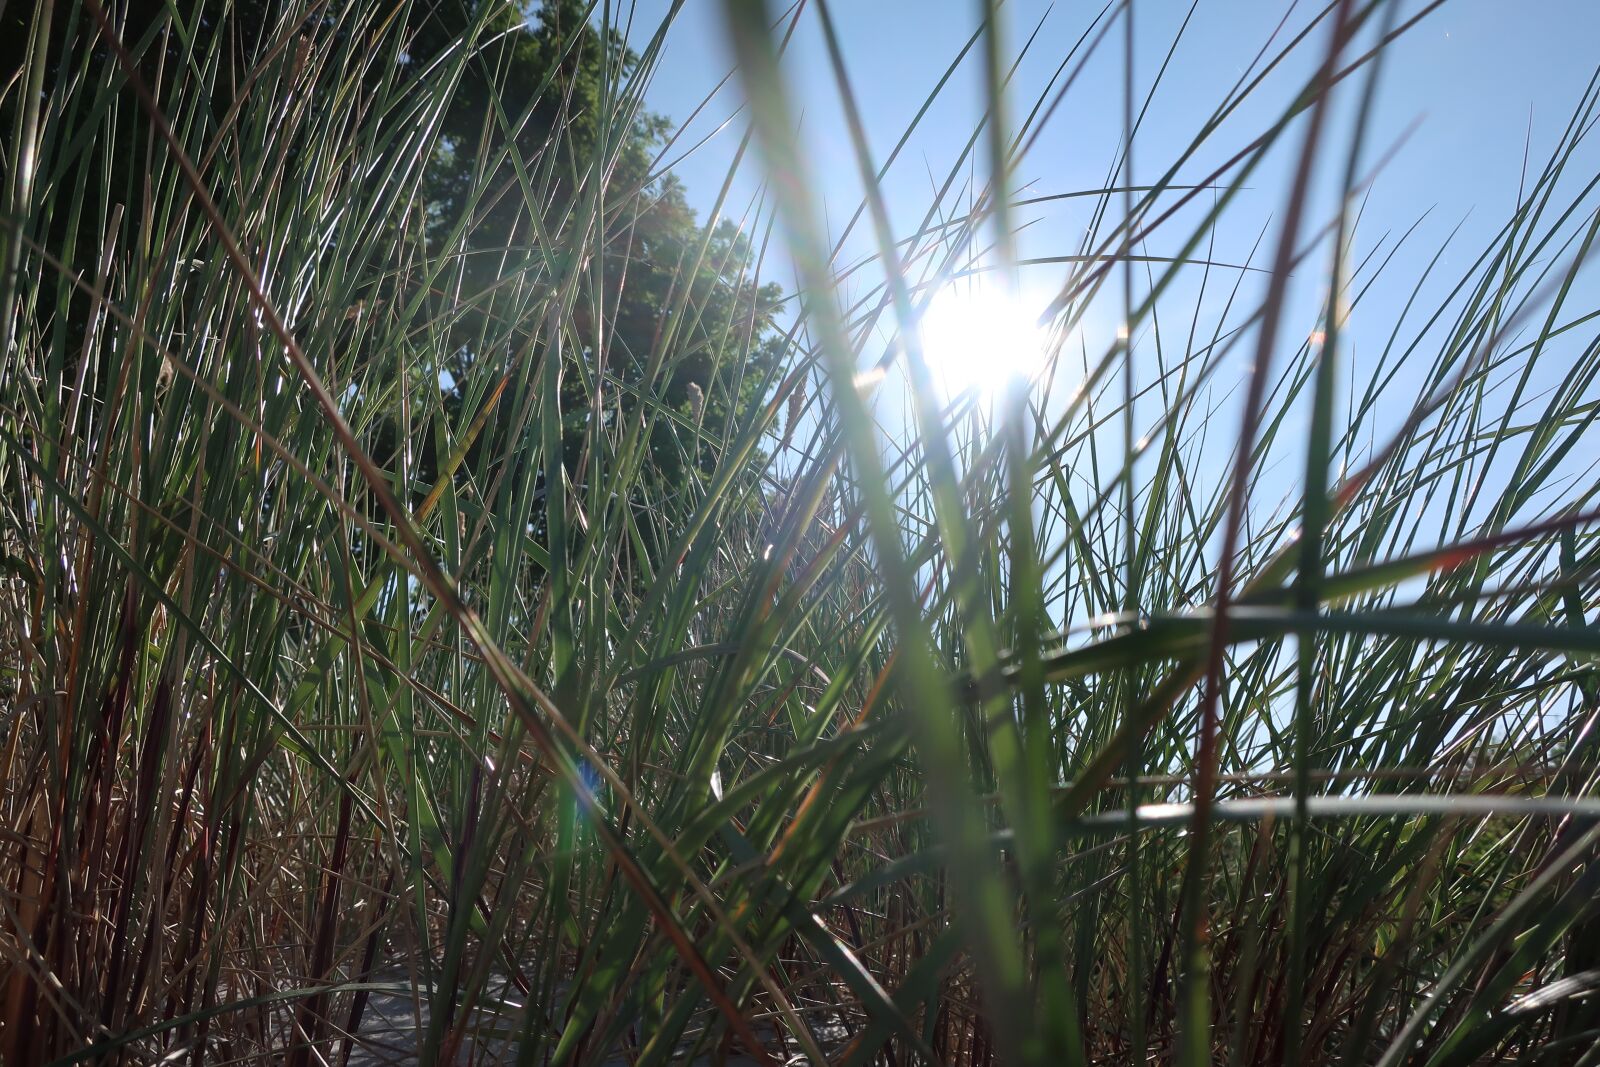 Canon PowerShot G9 X Mark II sample photo. Baltic sea, sun, grass photography